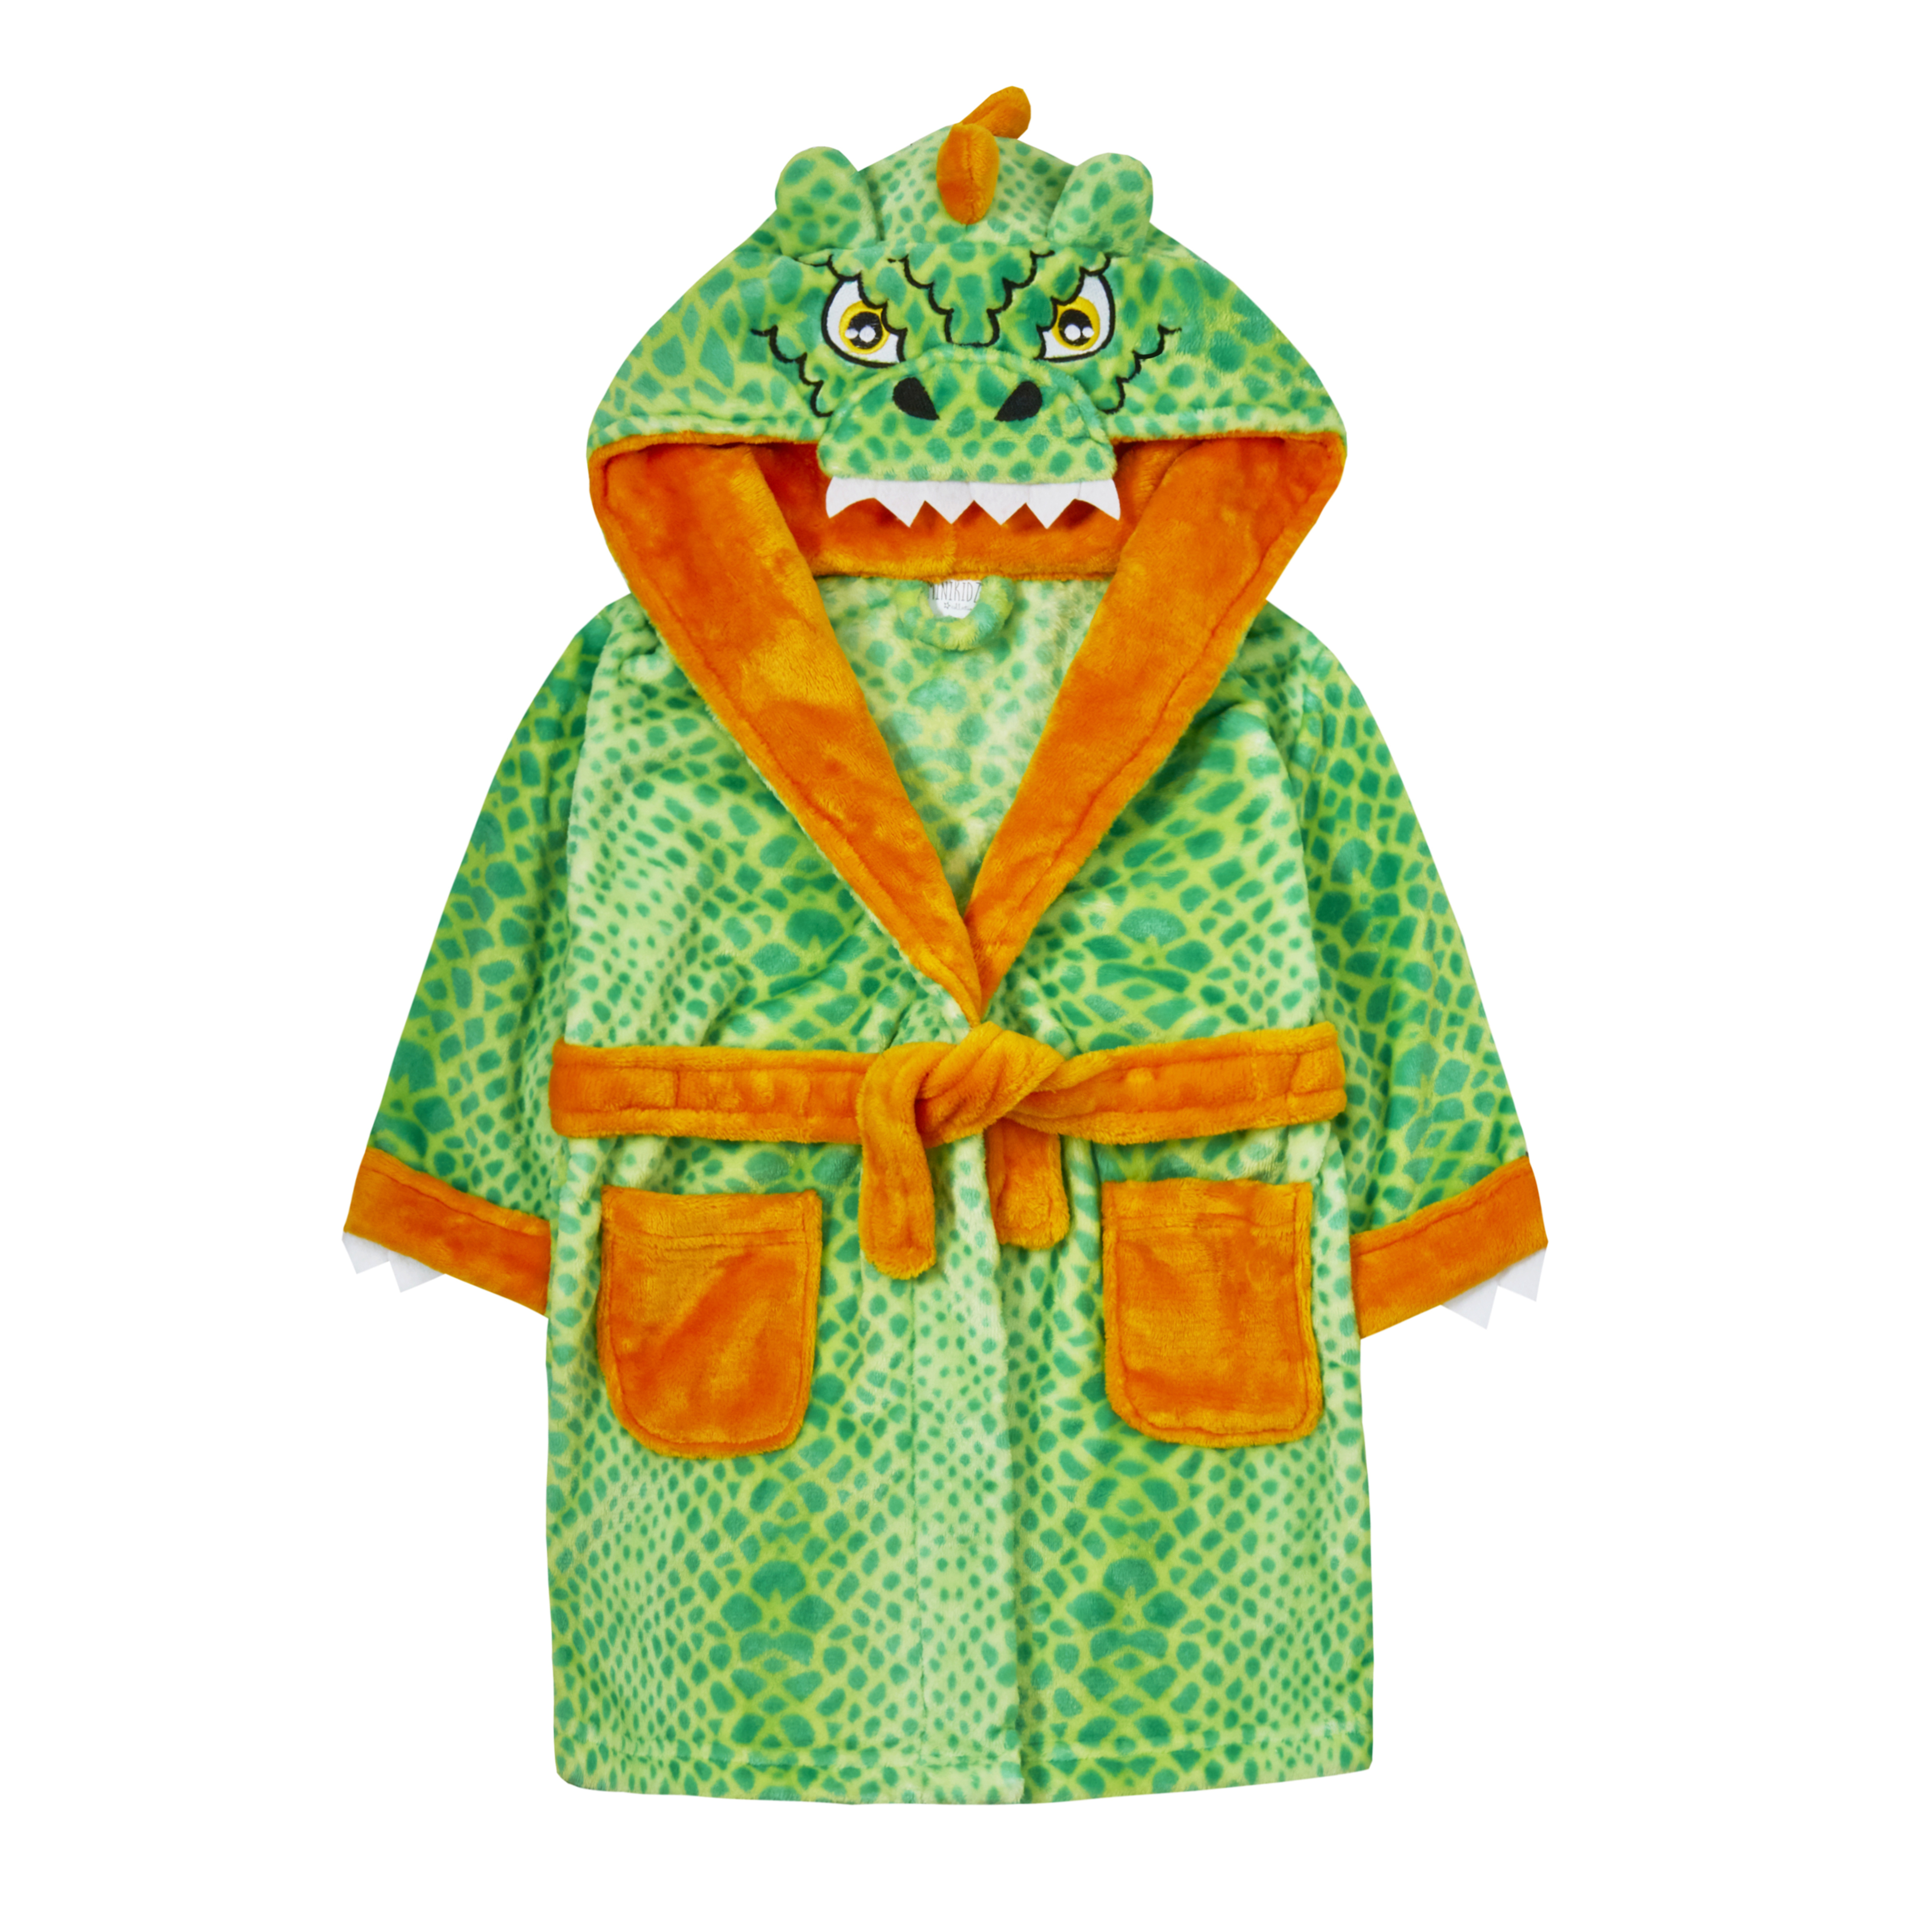 Boys Dino Dinosaur Bones Dressing Gown Robe Plush Fleece Toddler Winter Hooded